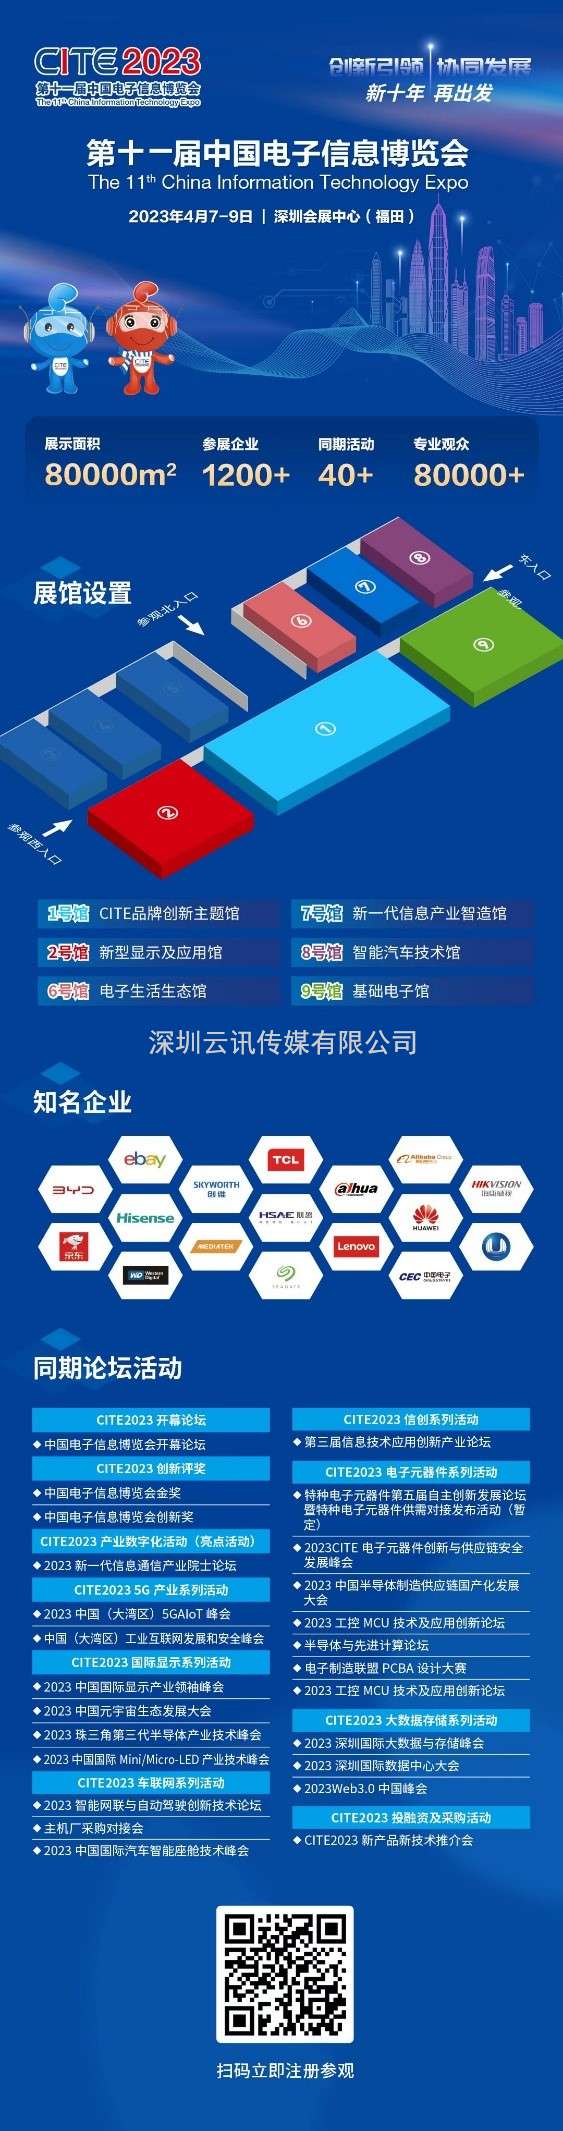 知名半导体芯片制造企业——扬州晶新微电子参展CITE2023